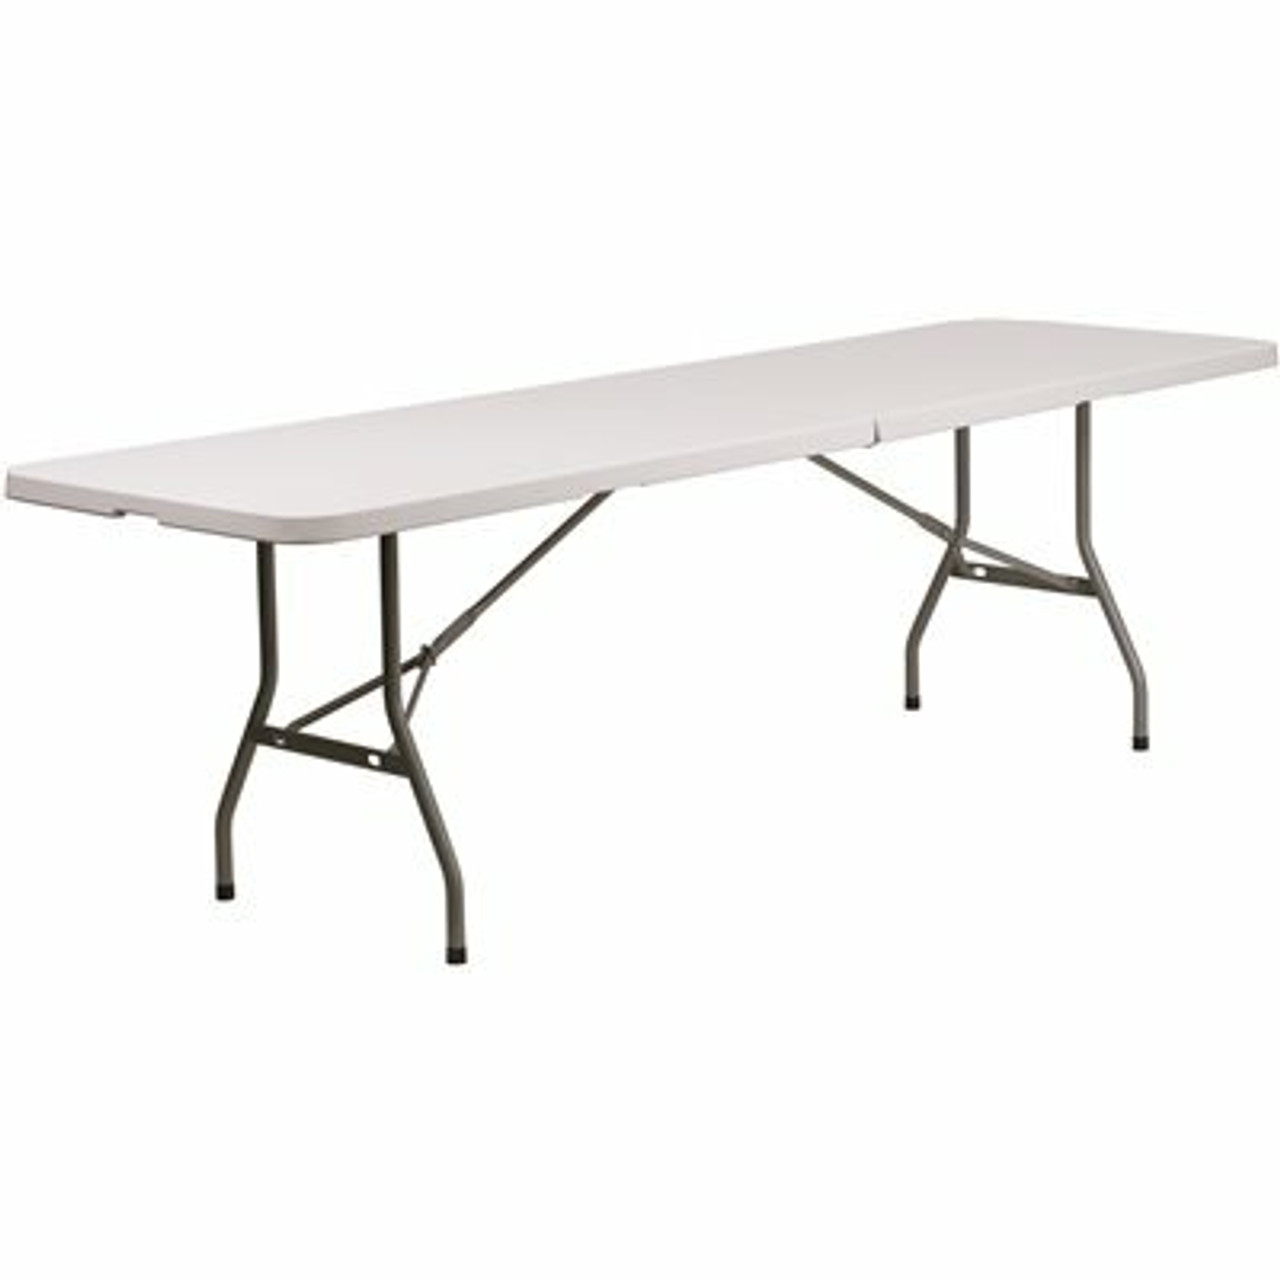 96 In. Granite White Plastic Tabletop Metal Frame Folding Table - 308685852